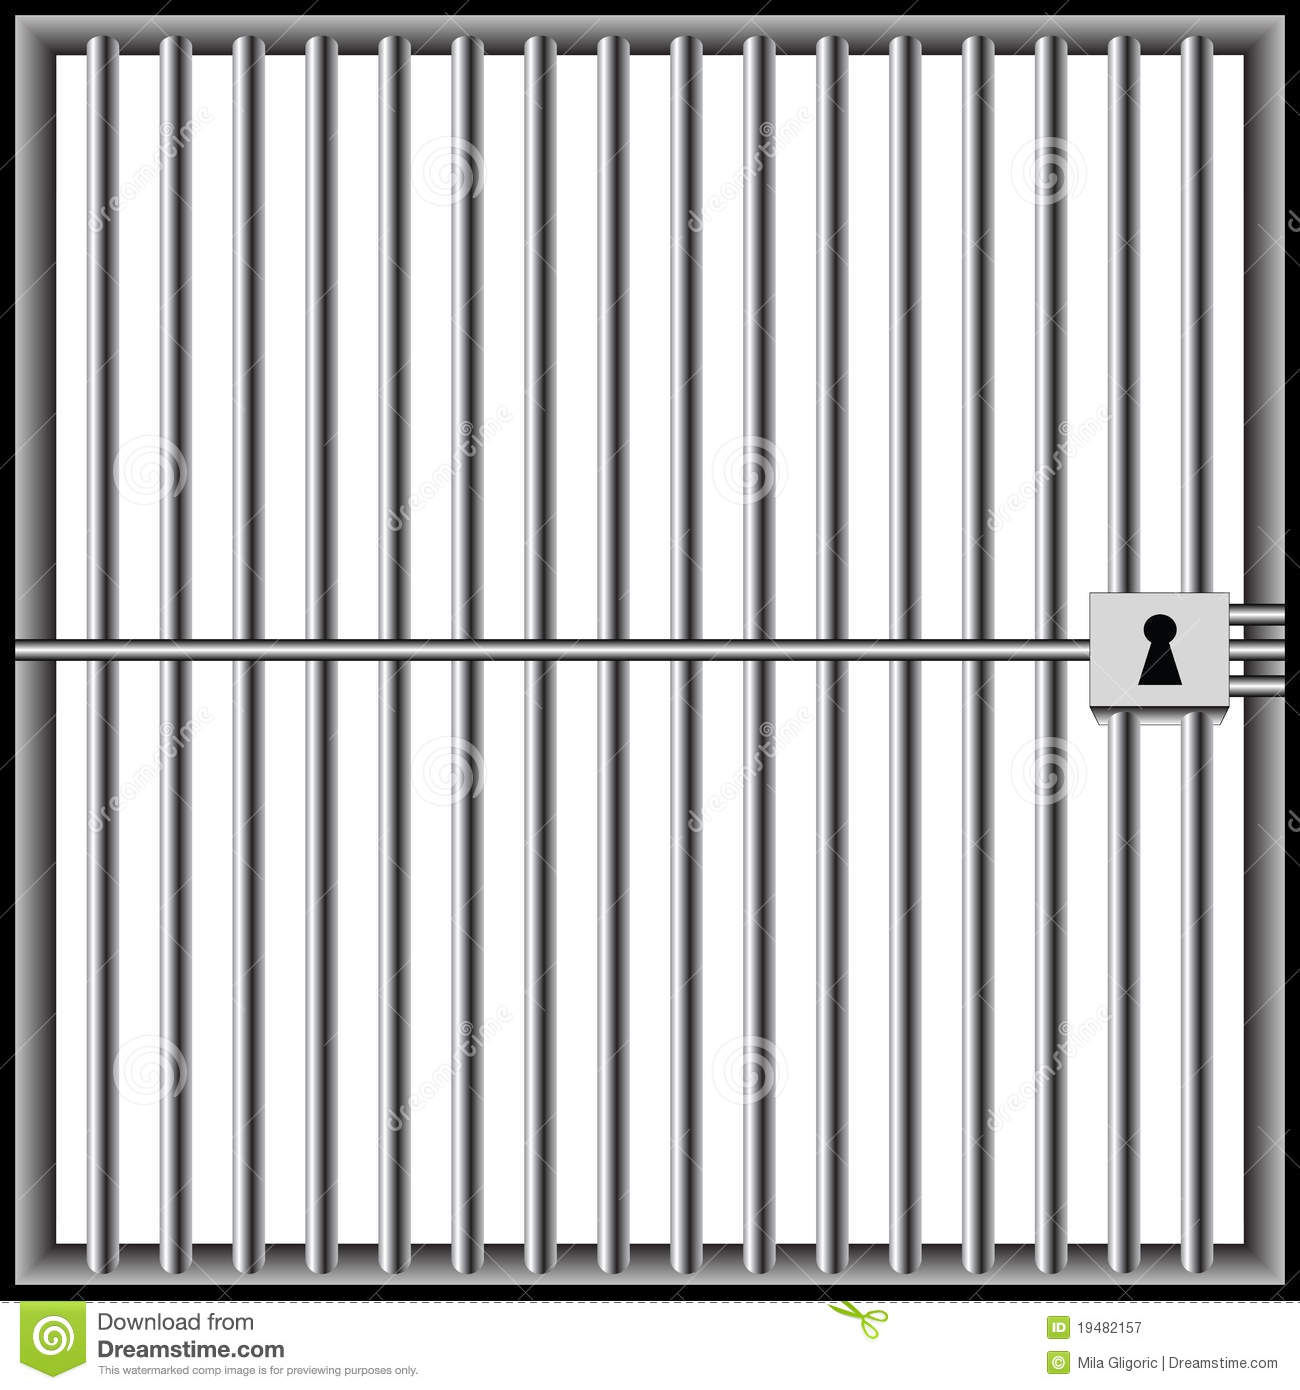 Free PNG Jail - 49123